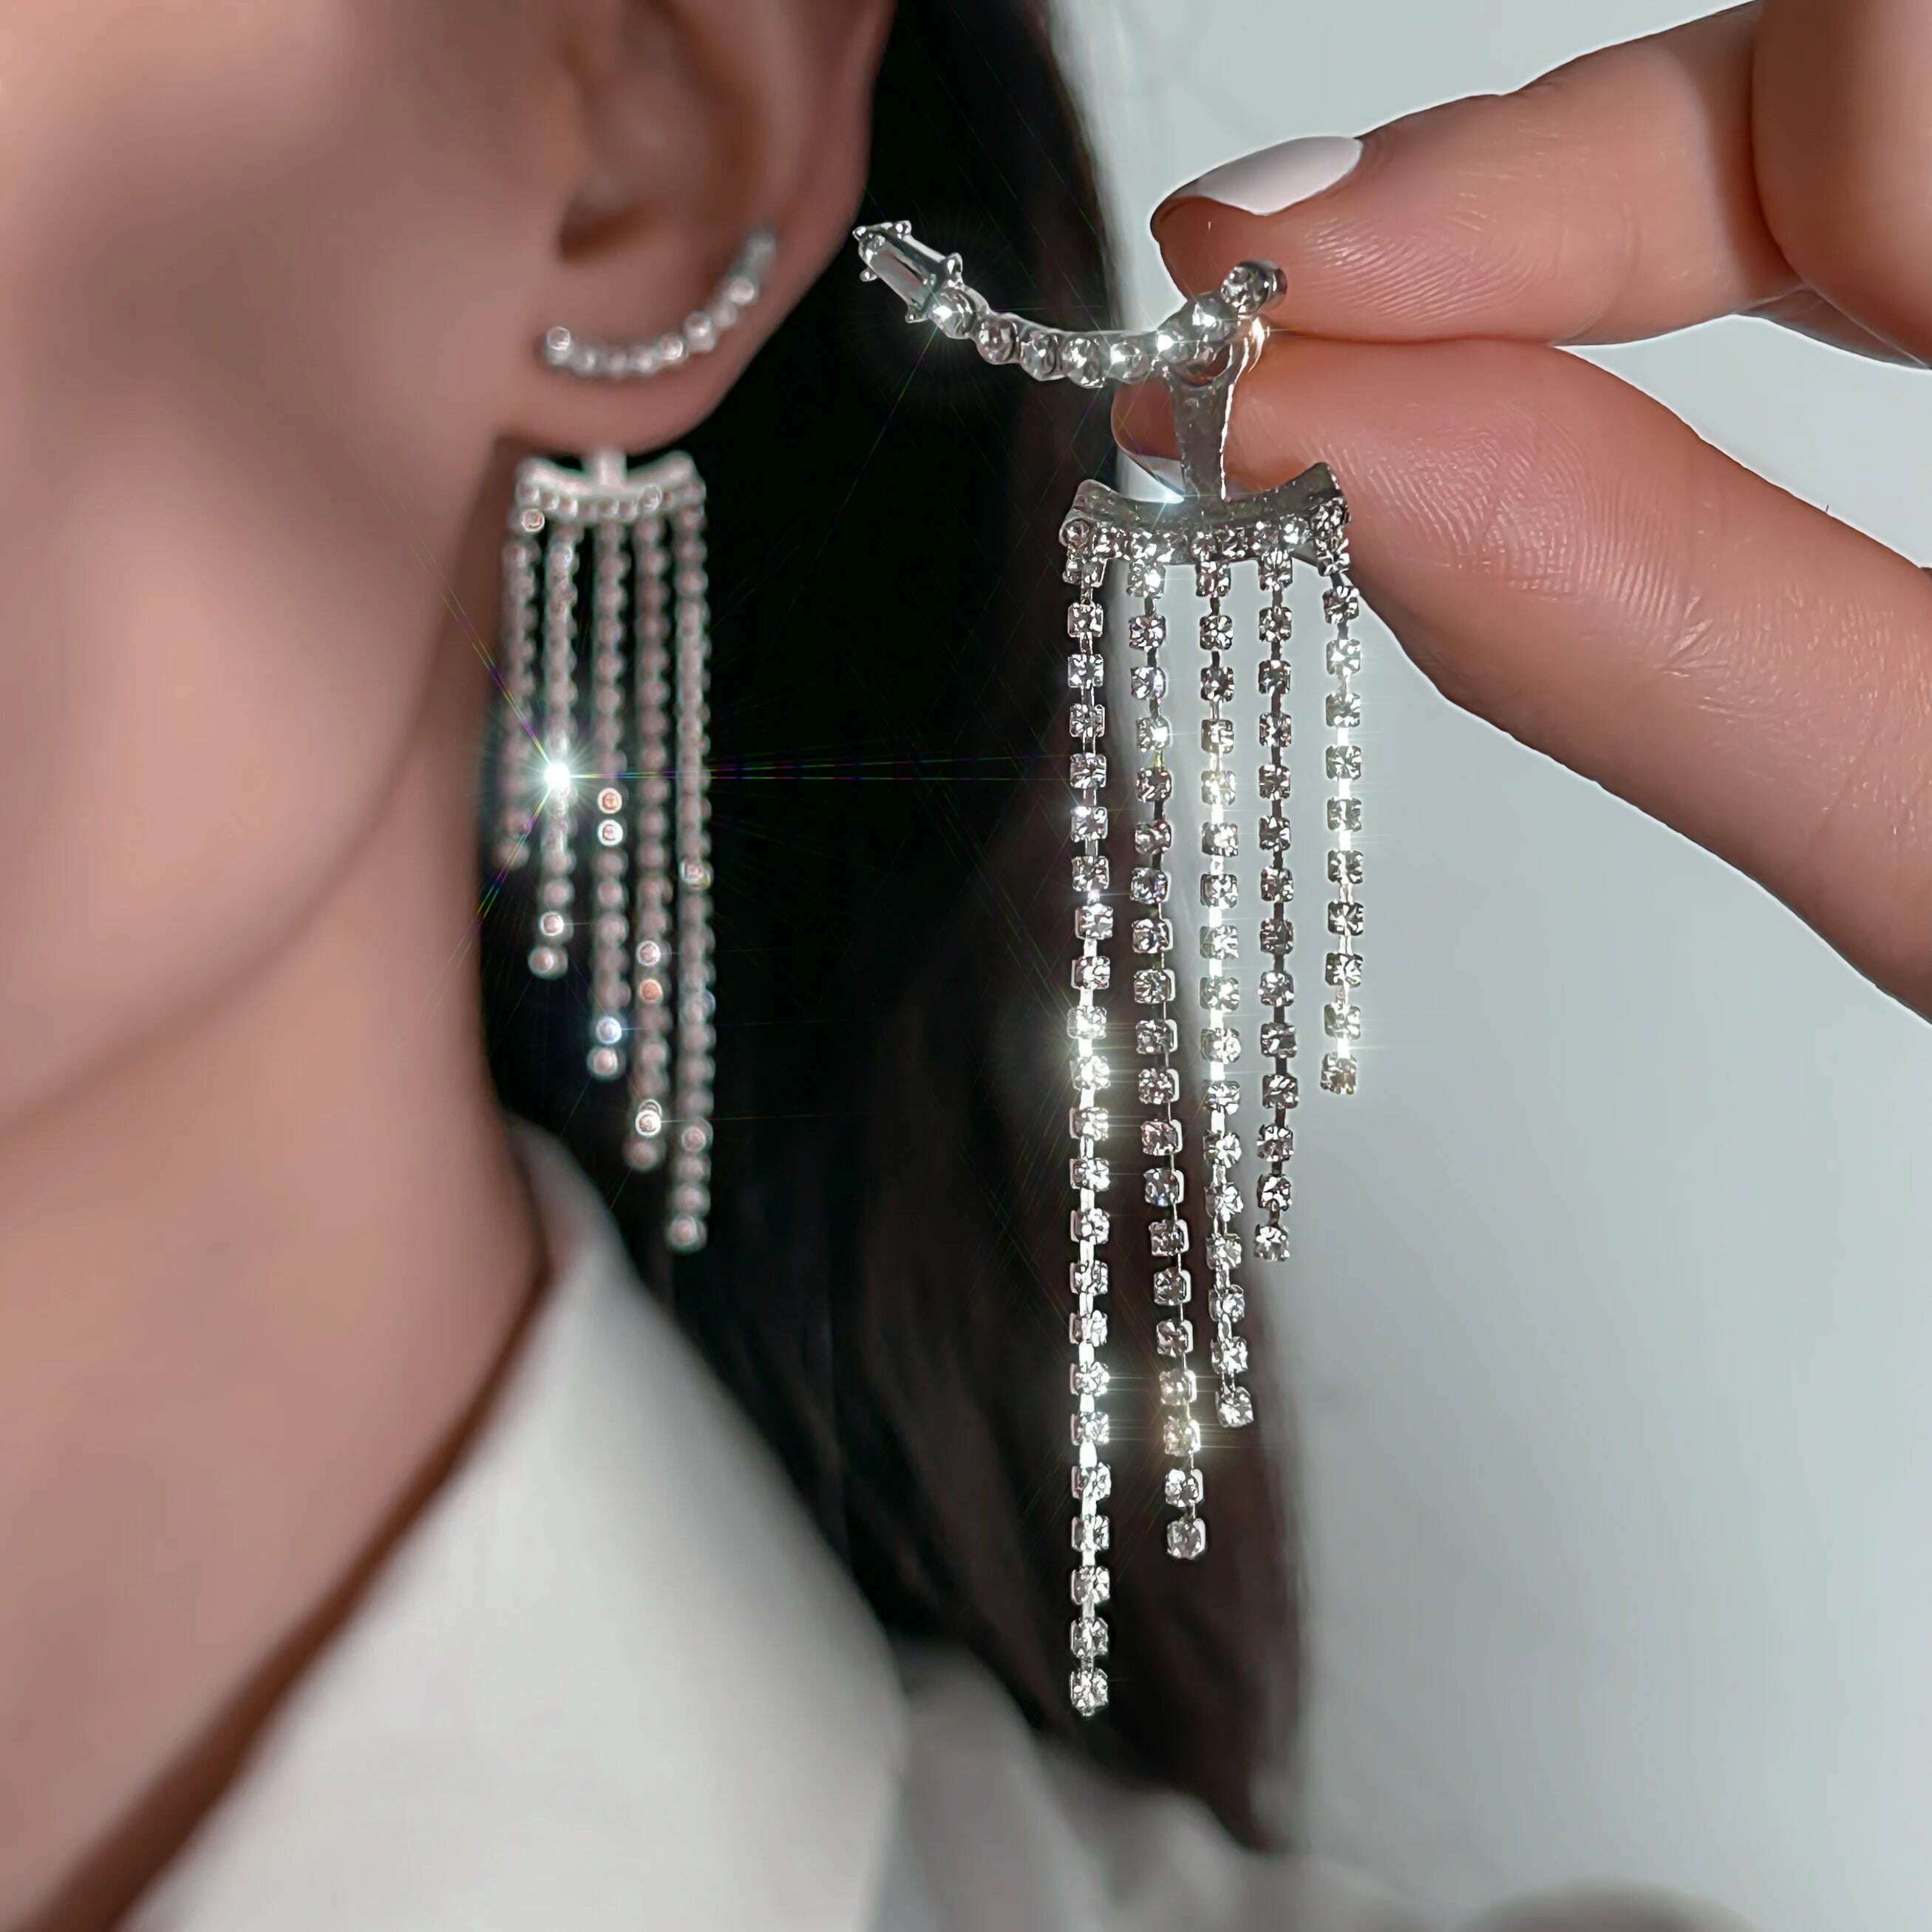 KIMLUD, Korean Full Rhinestone Long Tassel Drop Earrings for Women Exquisite Luxury Zircon Crystal Earrings female Jewelry Wholesale, Silver Color, KIMLUD Women's Clothes